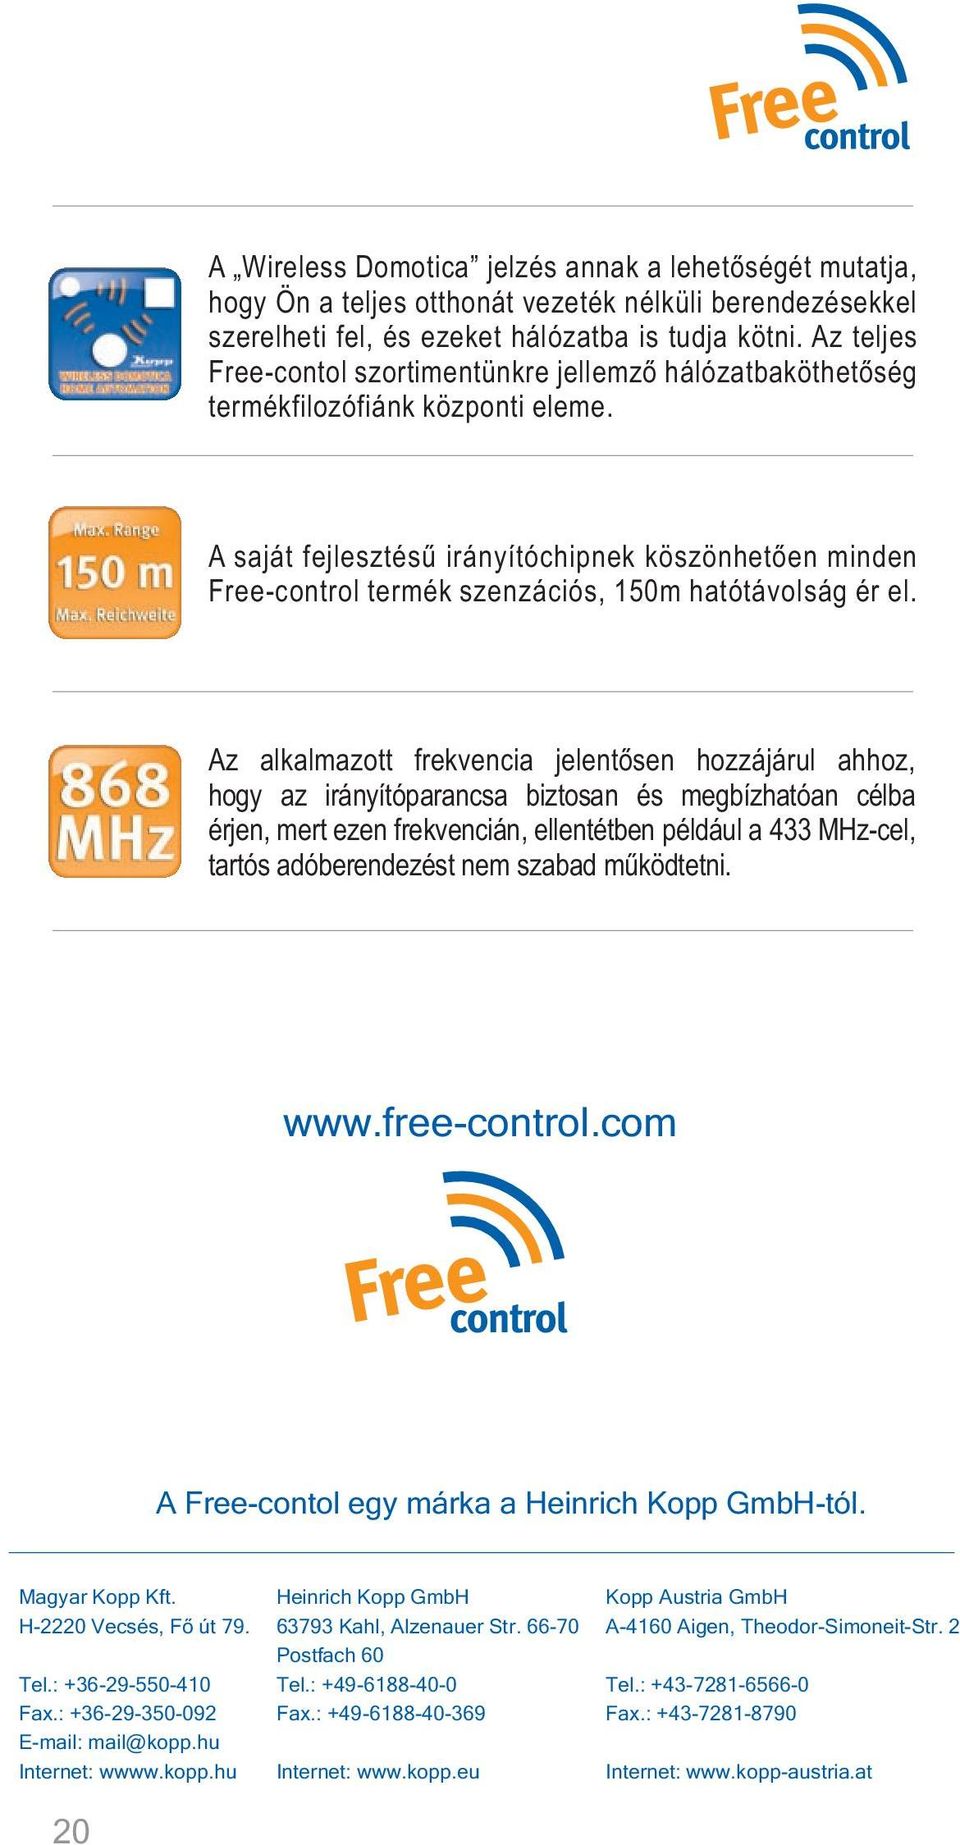 A saját fejlesztésû irányítóchipnek köszönhetõen minden Free-control termék szenzációs, 150m hatótávolság ér el.